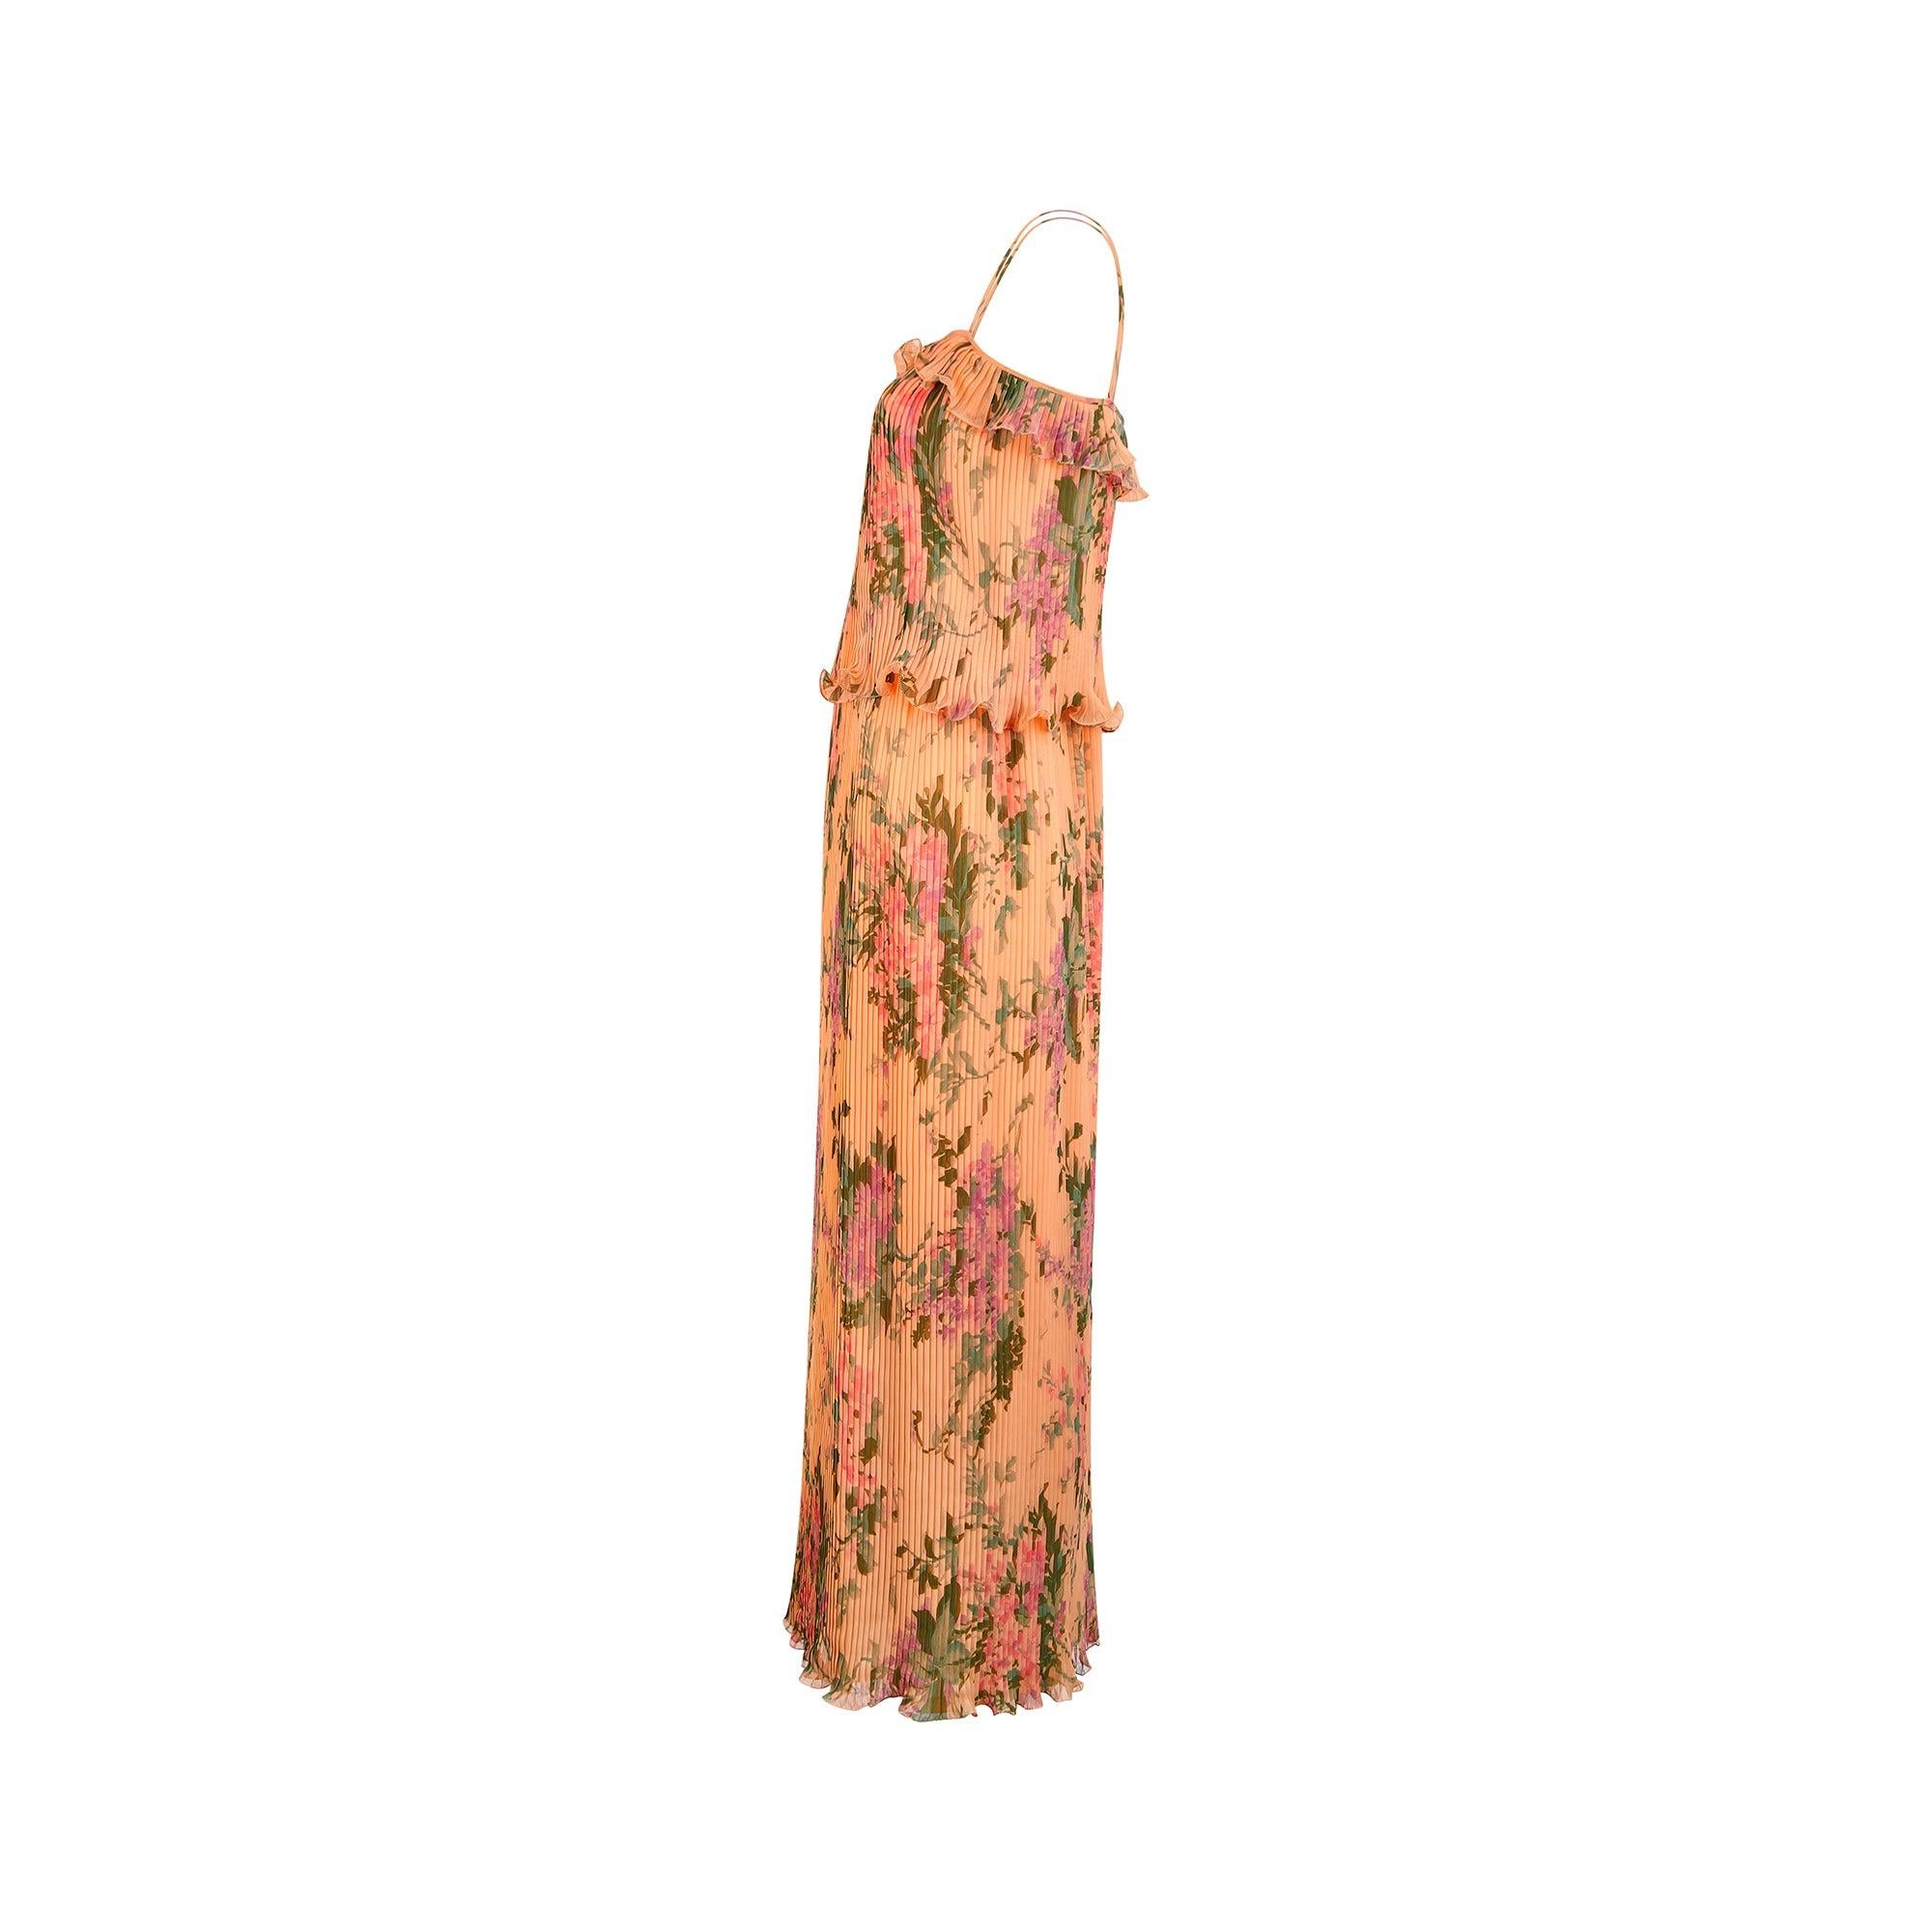 Dieses Maxikleid aus den 1970er Jahren wurde in Paris gekauft und ist aus pfirsichfarbenem Chiffon gefertigt, der mit auffälligen lilafarbenen und rosafarbenen Blumen übersät ist. Es ist rundum mit einer innovativen Technik gefaltet, die dafür